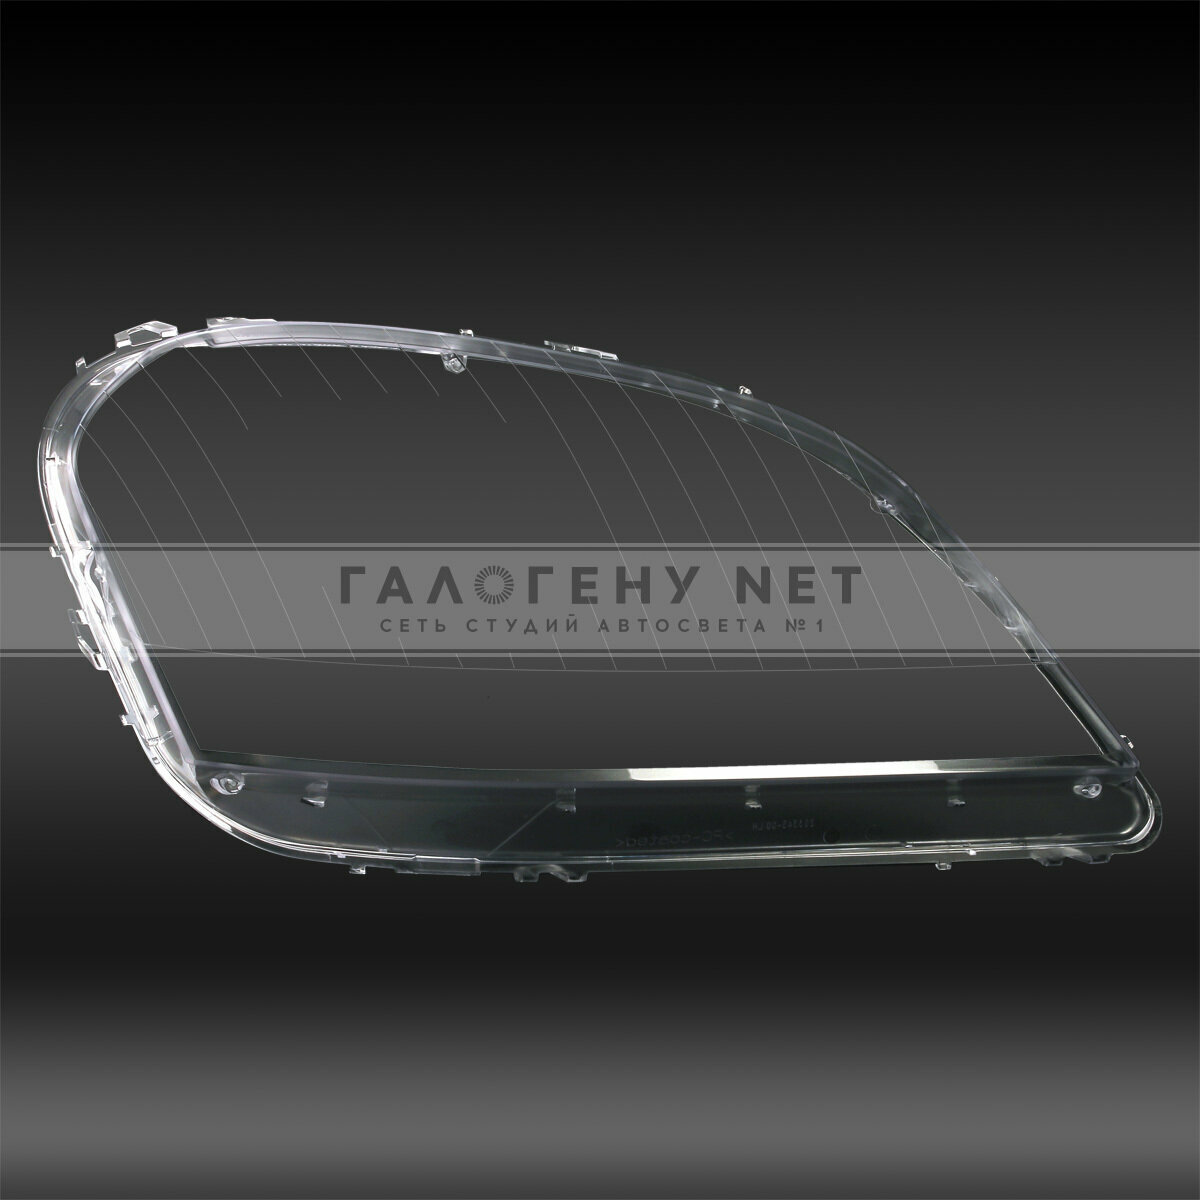 Стекло фары GNX для автомобилей Mercedes ML W164 2005-2008 правое поликарбонат из прозрачного материала аналог